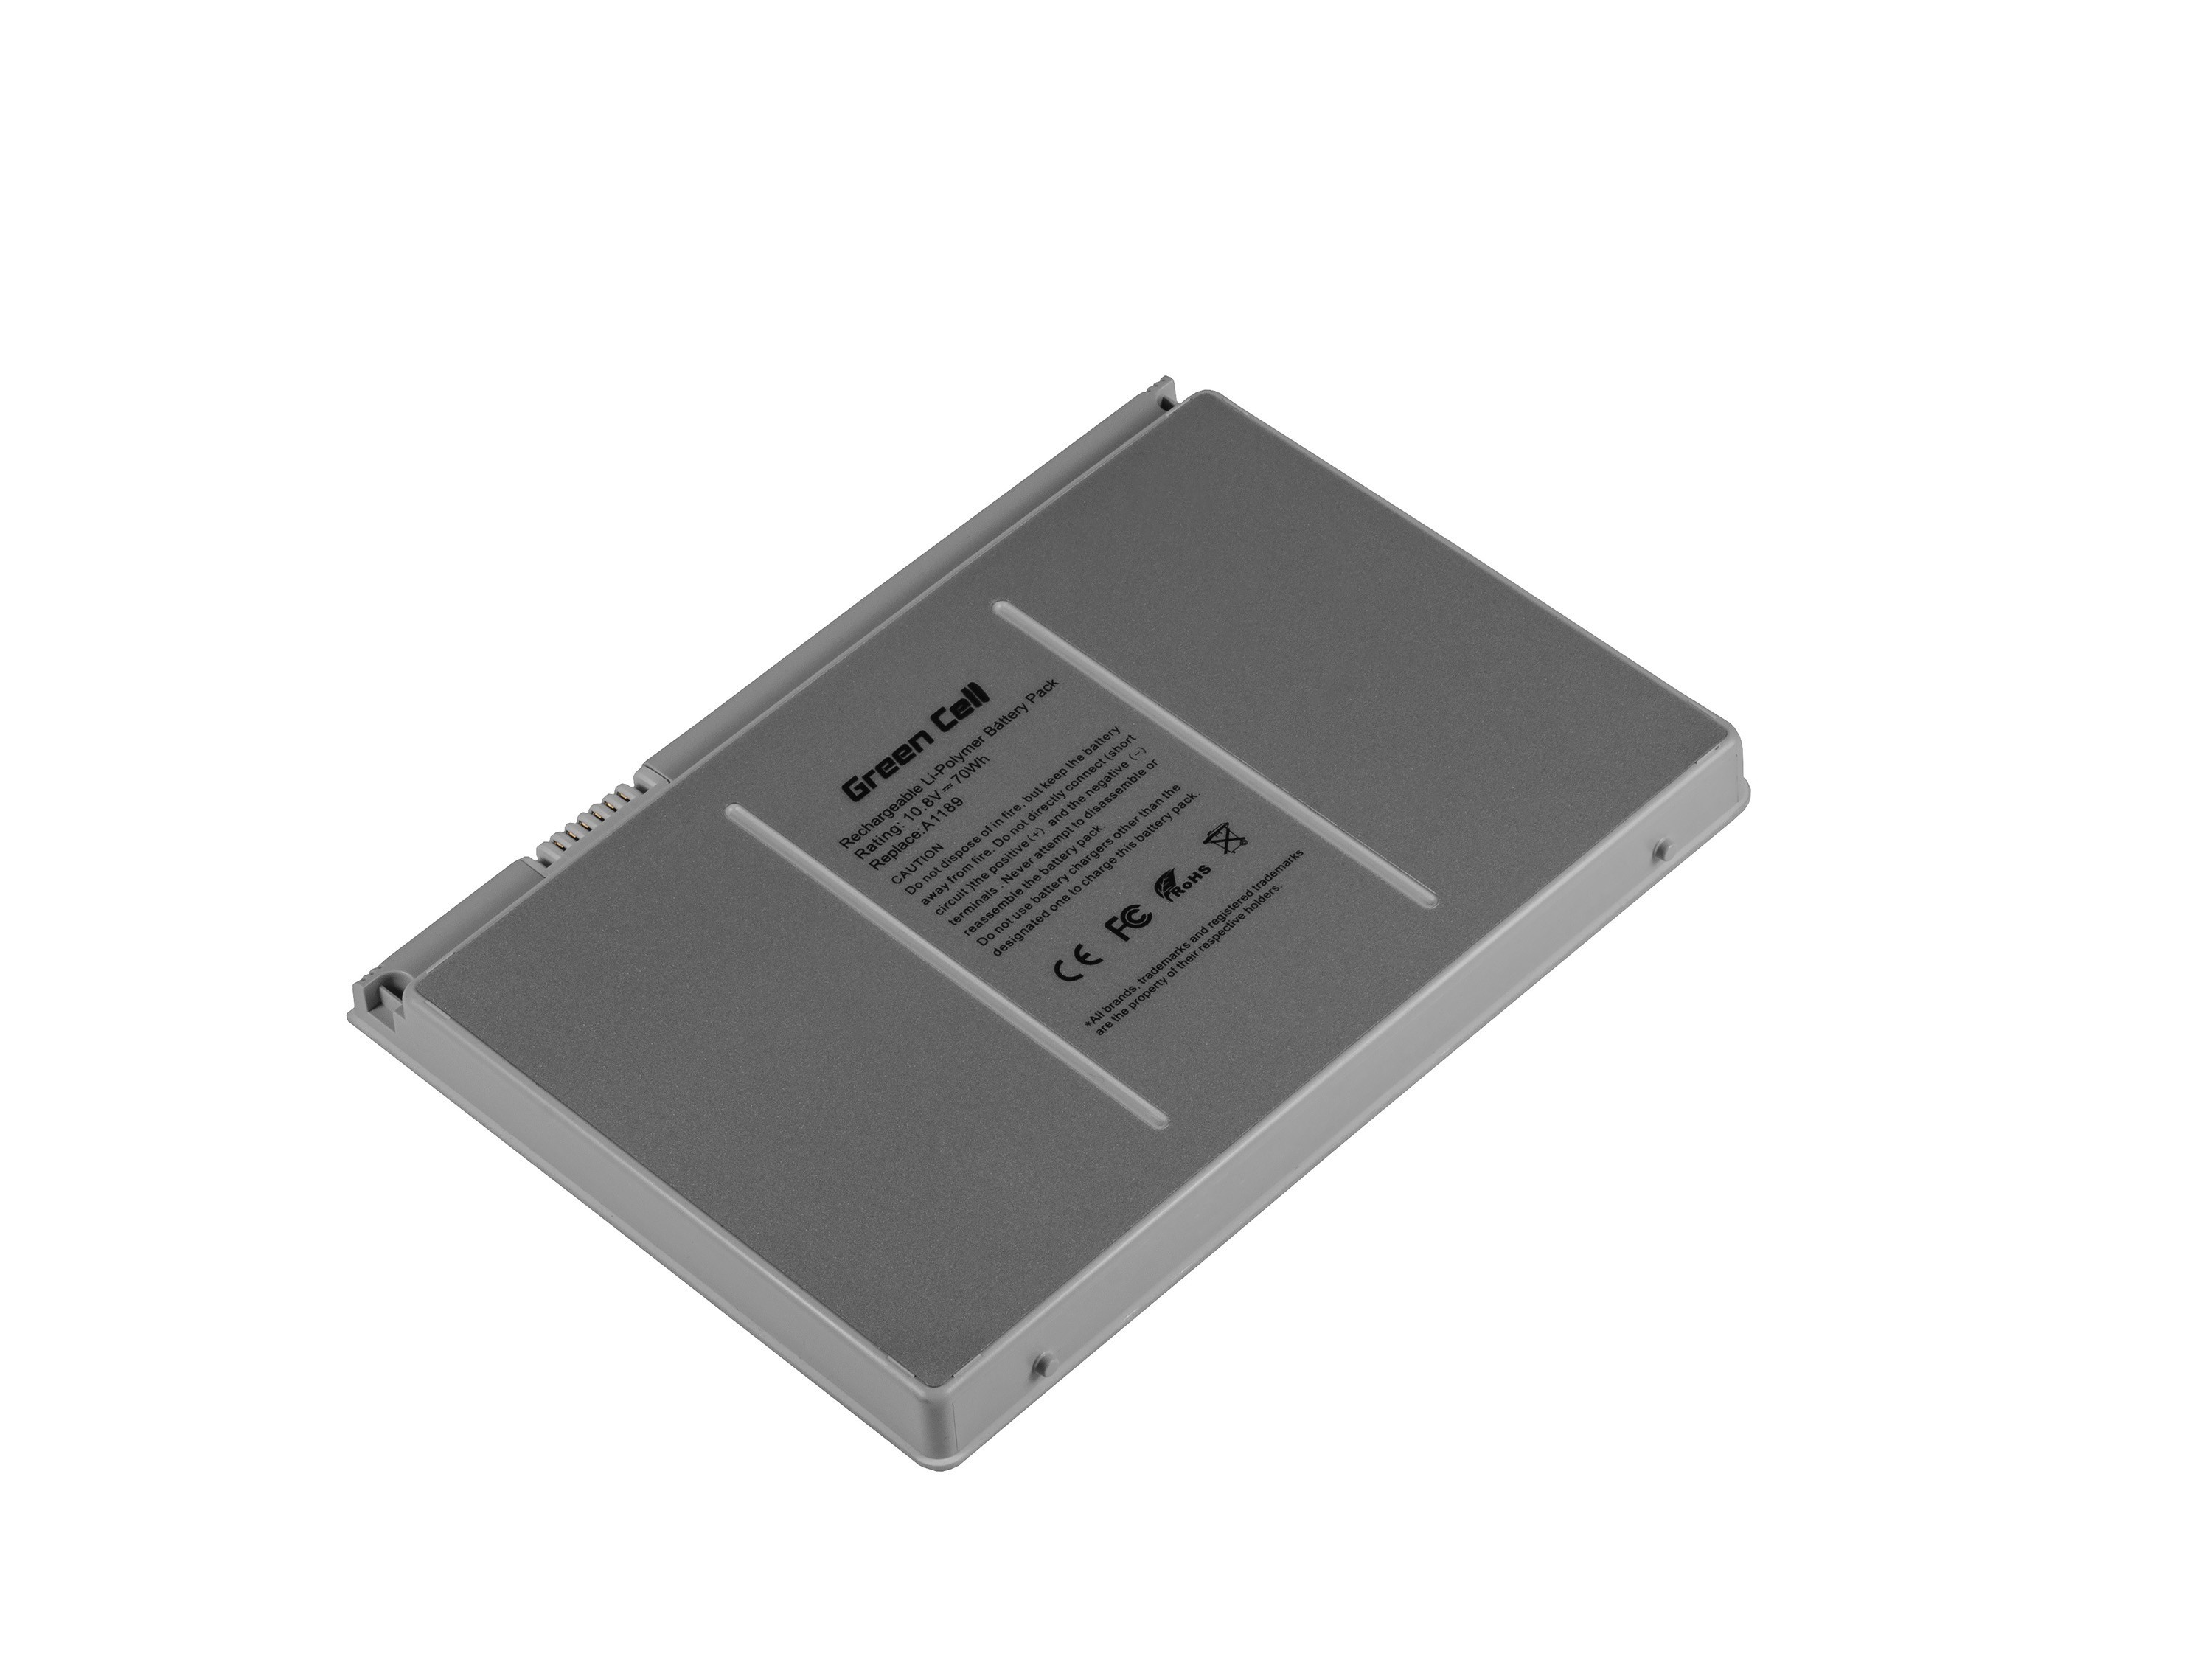 PRO Batterij voor Apple Macbook Pro 17 A1151 A1212 A1229 A1261 (2006, 2007, 2008) / 11,1V 6500mAh